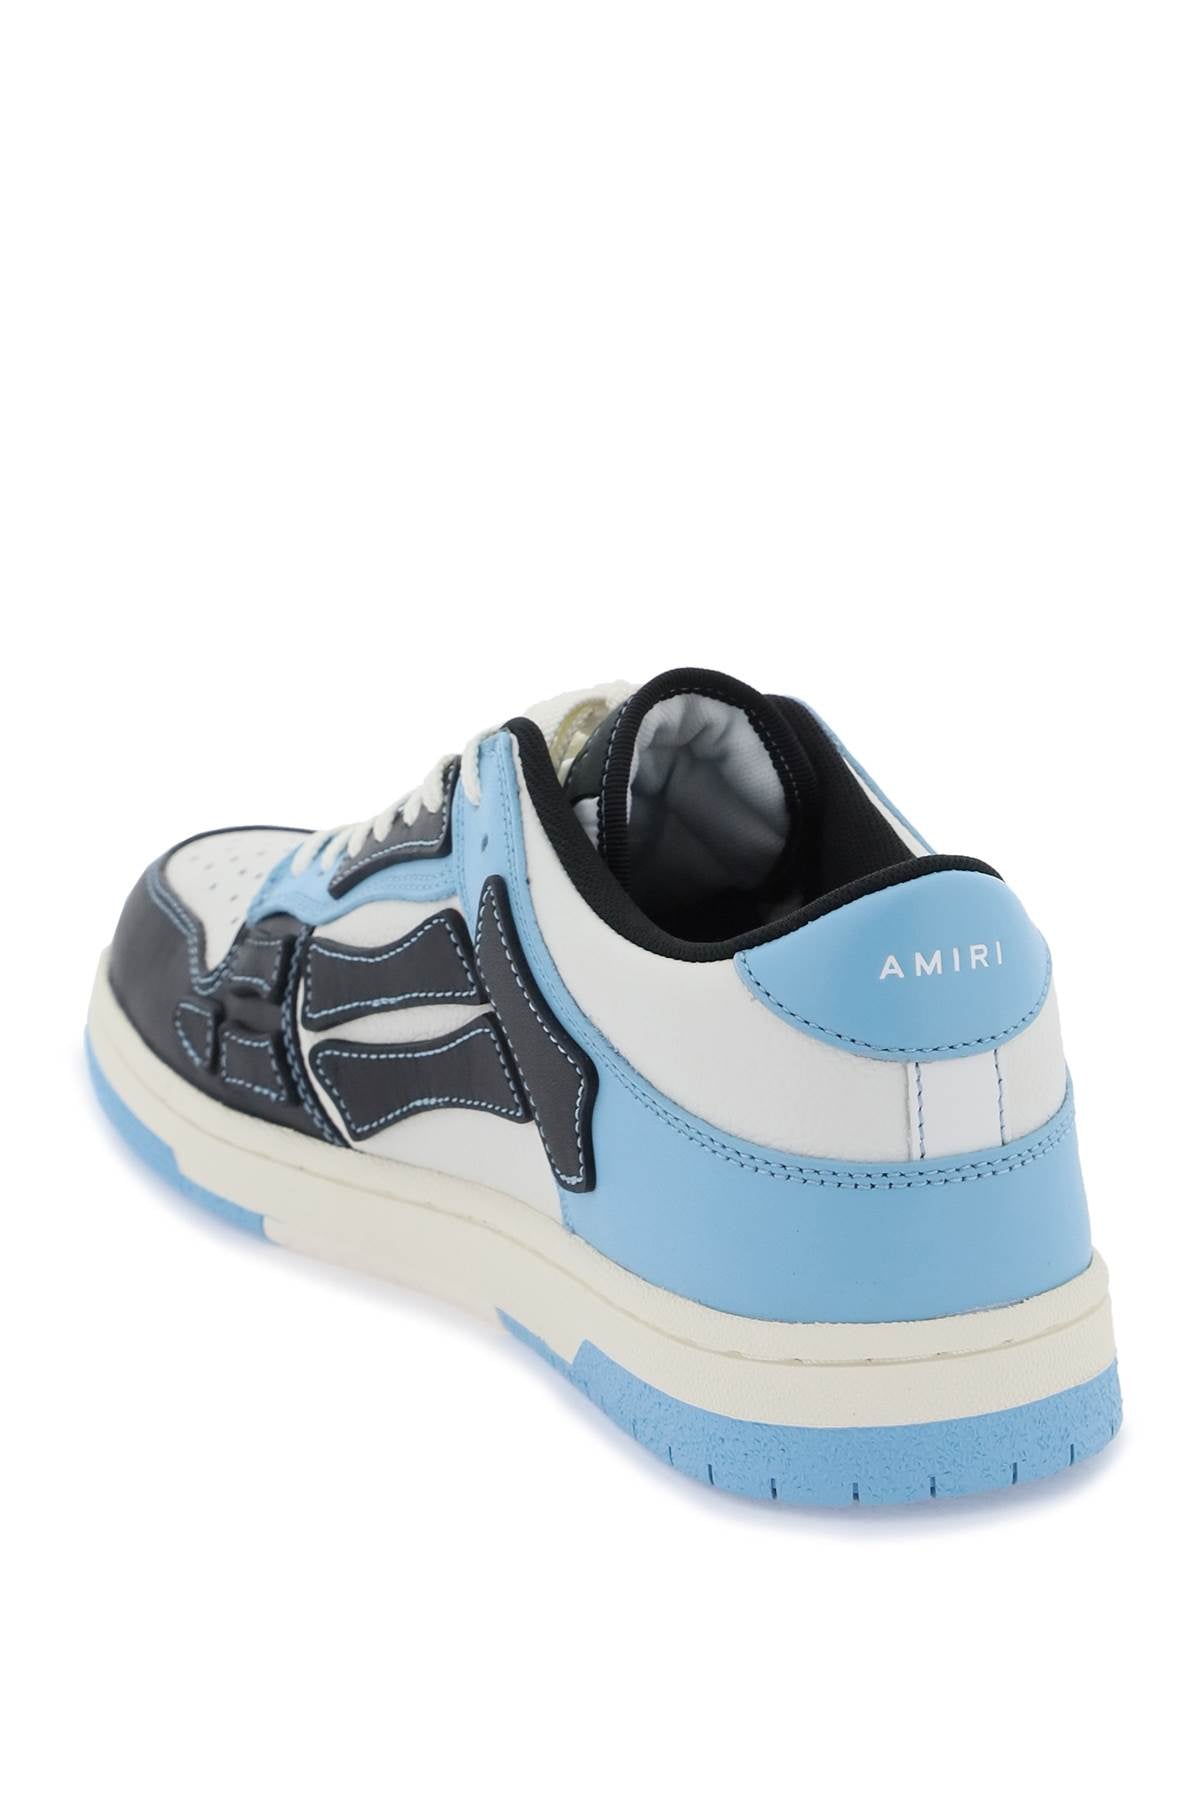 Shop Amiri Skel Top Low Sneakers In White, Black, Light Blue